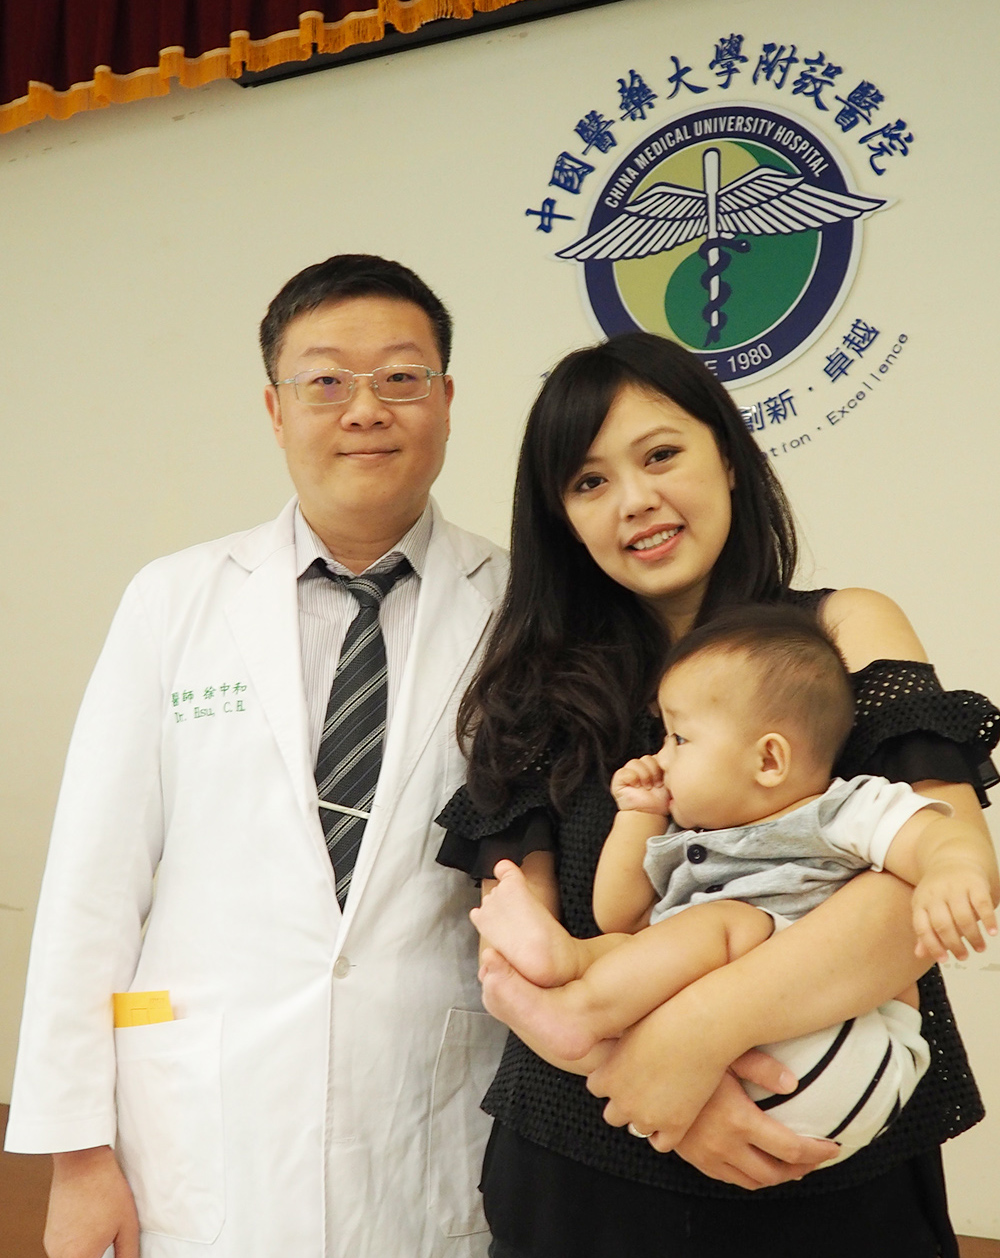 孕婦肺動脈栓塞 緊急超音波震碎血栓導管治療順利溶栓 生下健康的寶寶